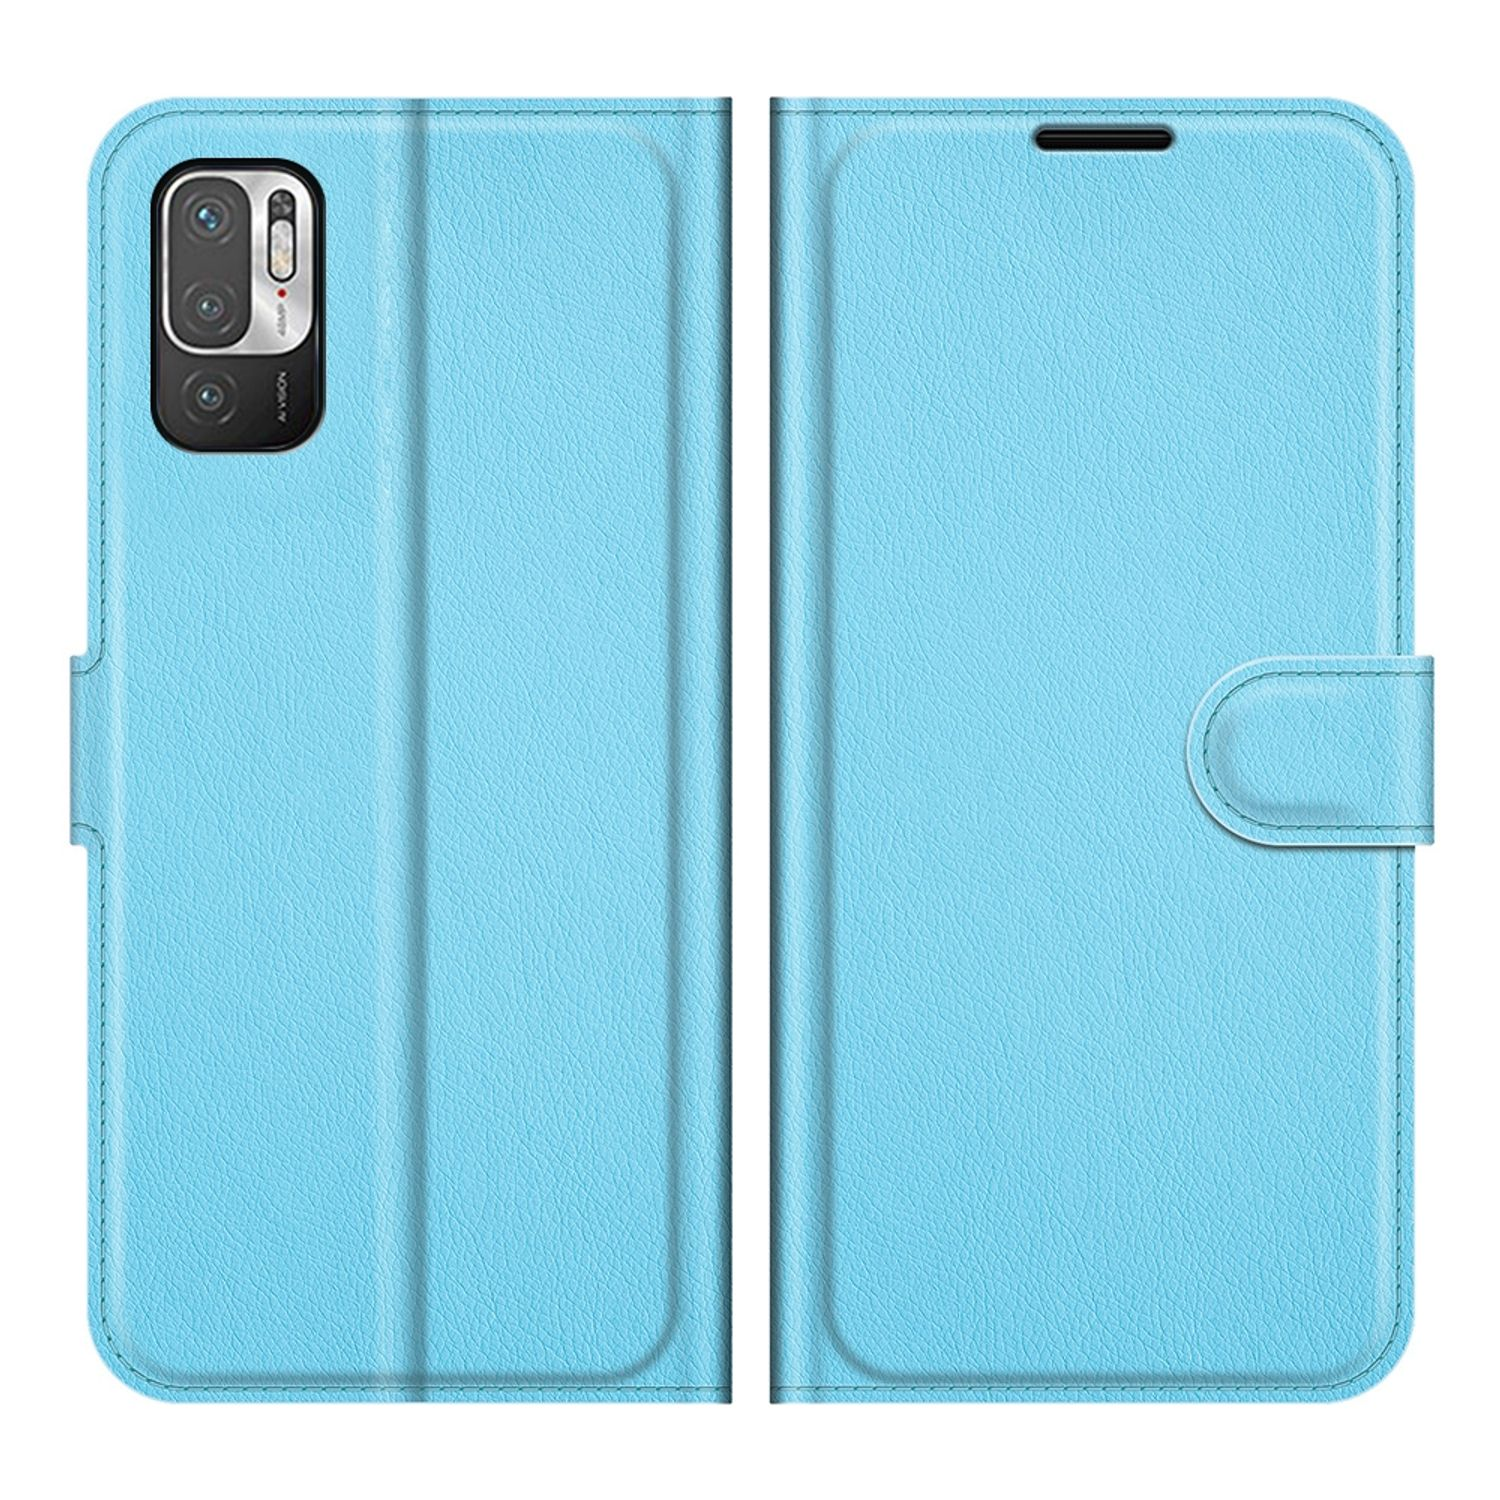 KÖNIG DESIGN Book Bookcover, Blau 5G, Redmi Note Case, Xiaomi, 10